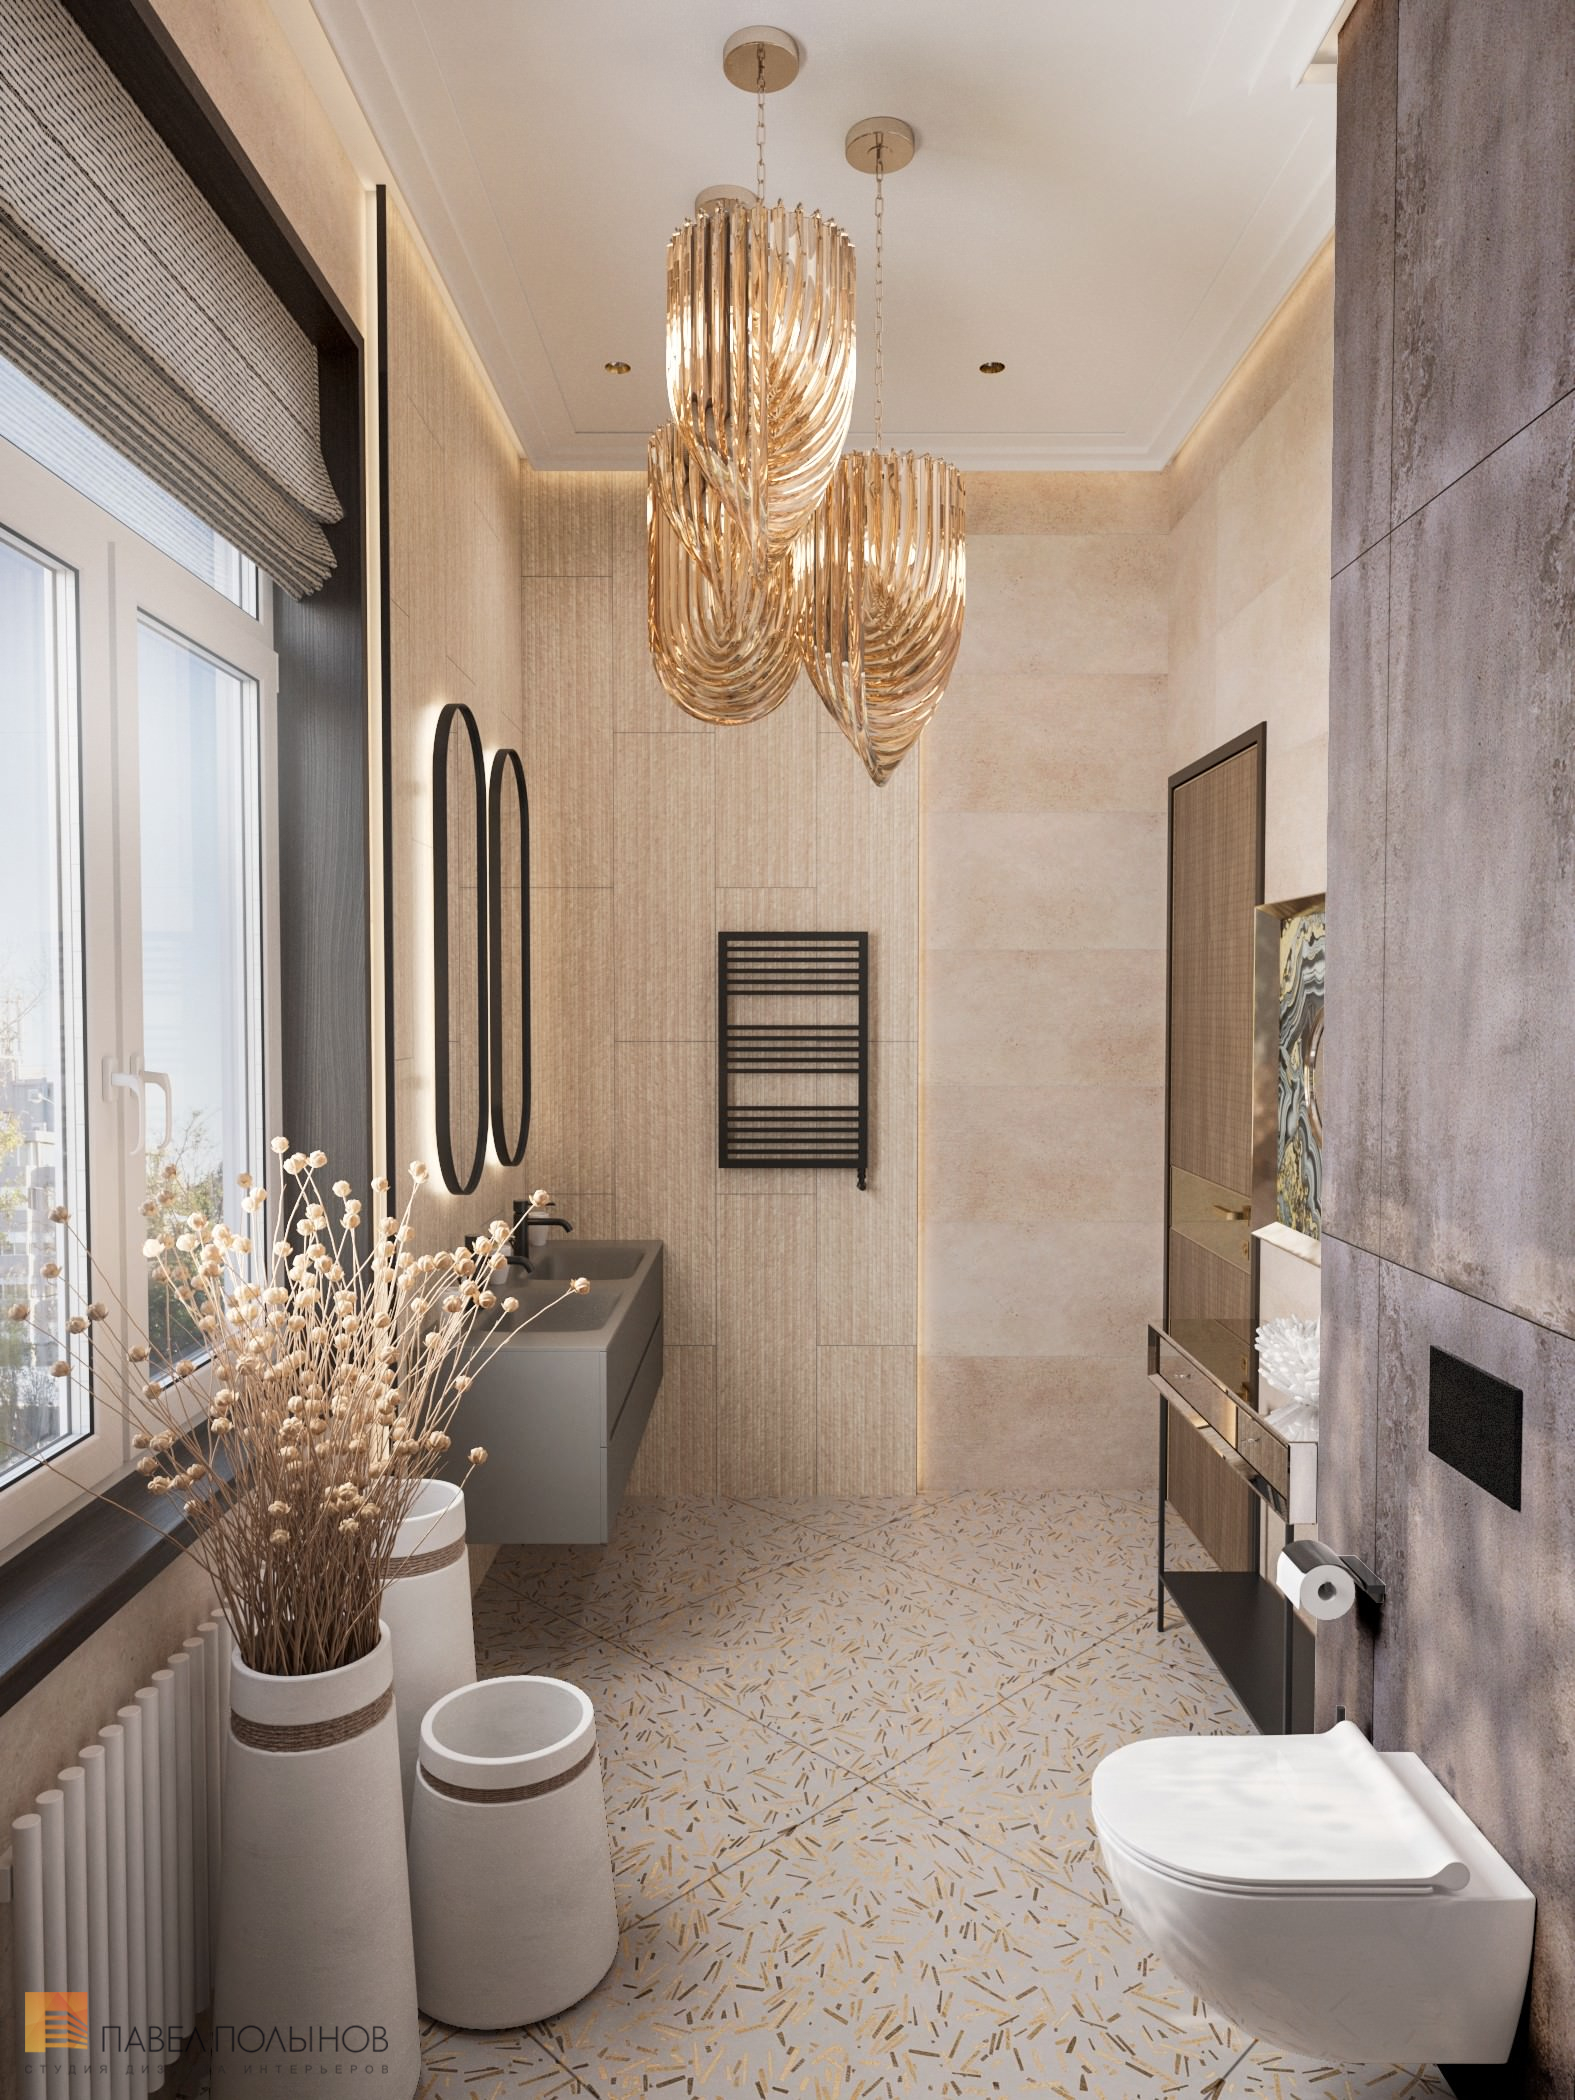 Фото дизайн душевой комнаты из проекта «Дизайн интерьера квартиры в стиле Ар-деко, 100 кв.м.»